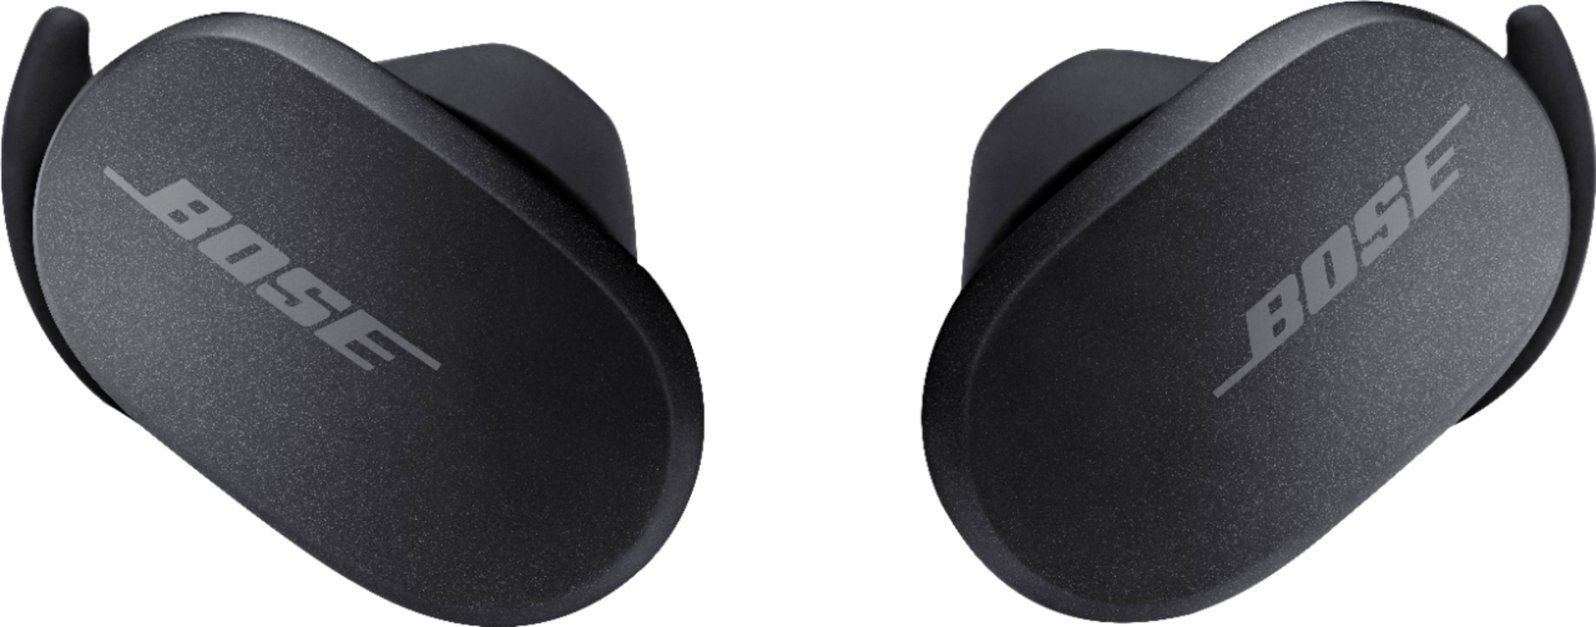 Bose - QuietComfort Earbuds True Wireless Noise Cancelling In-Ear Earbuds - Triple Black-Triple Black